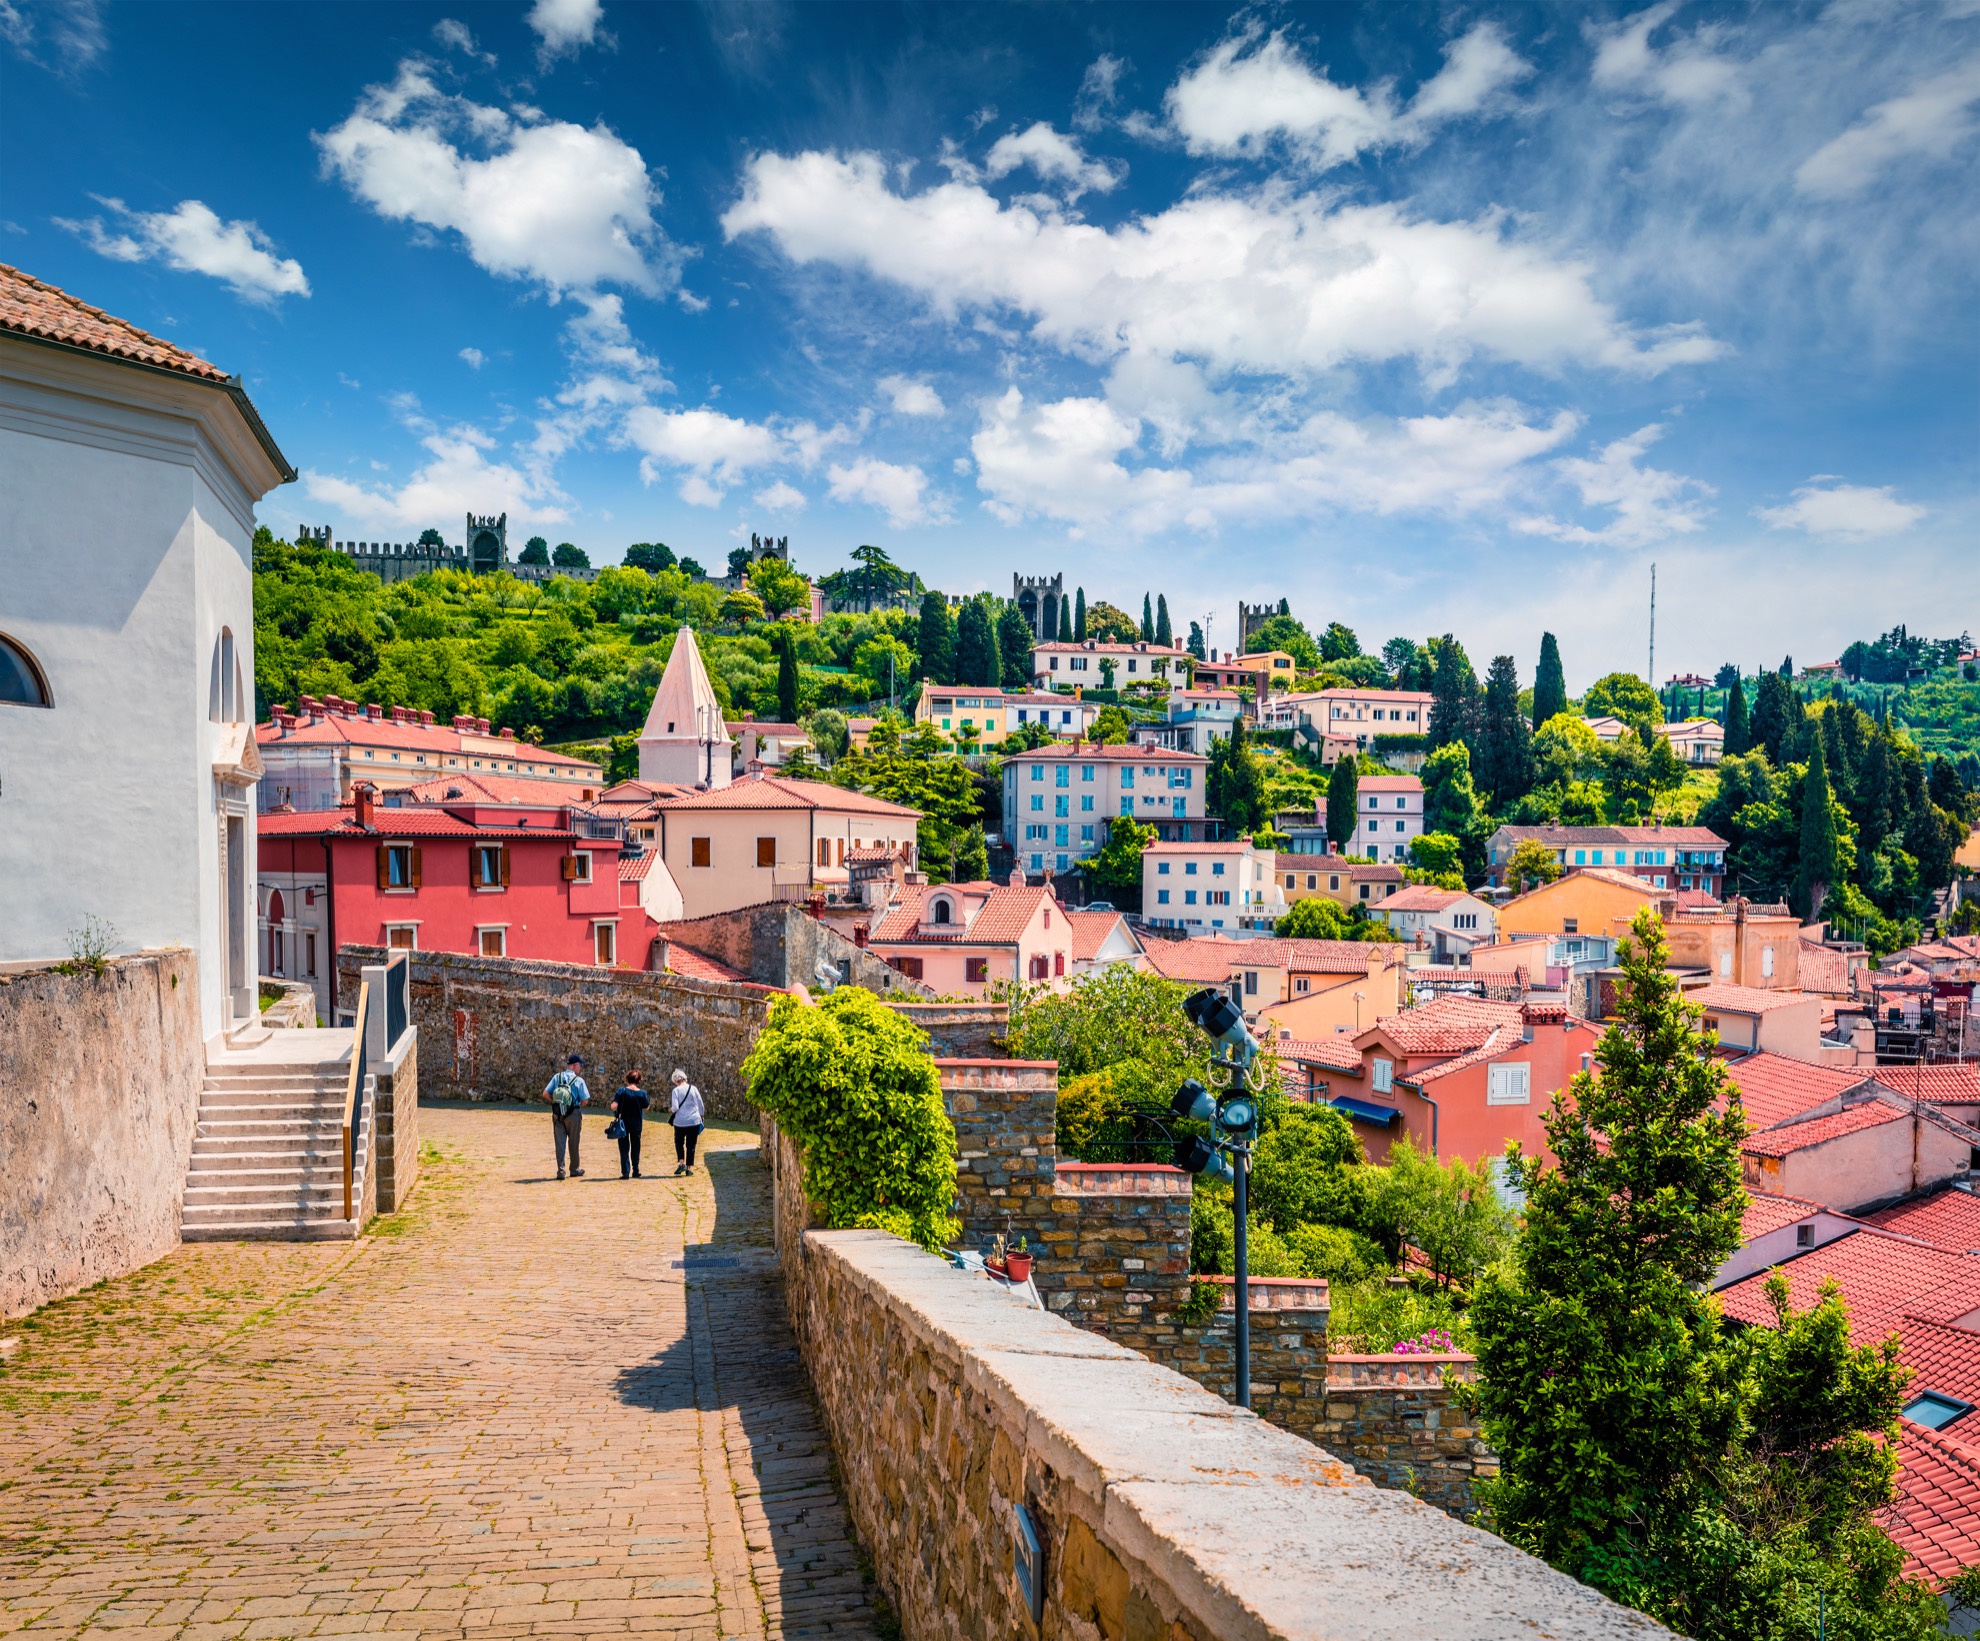 7 Datos rápidos sobre Piran, la hermosa ciudad costera de Eslovenia - 15